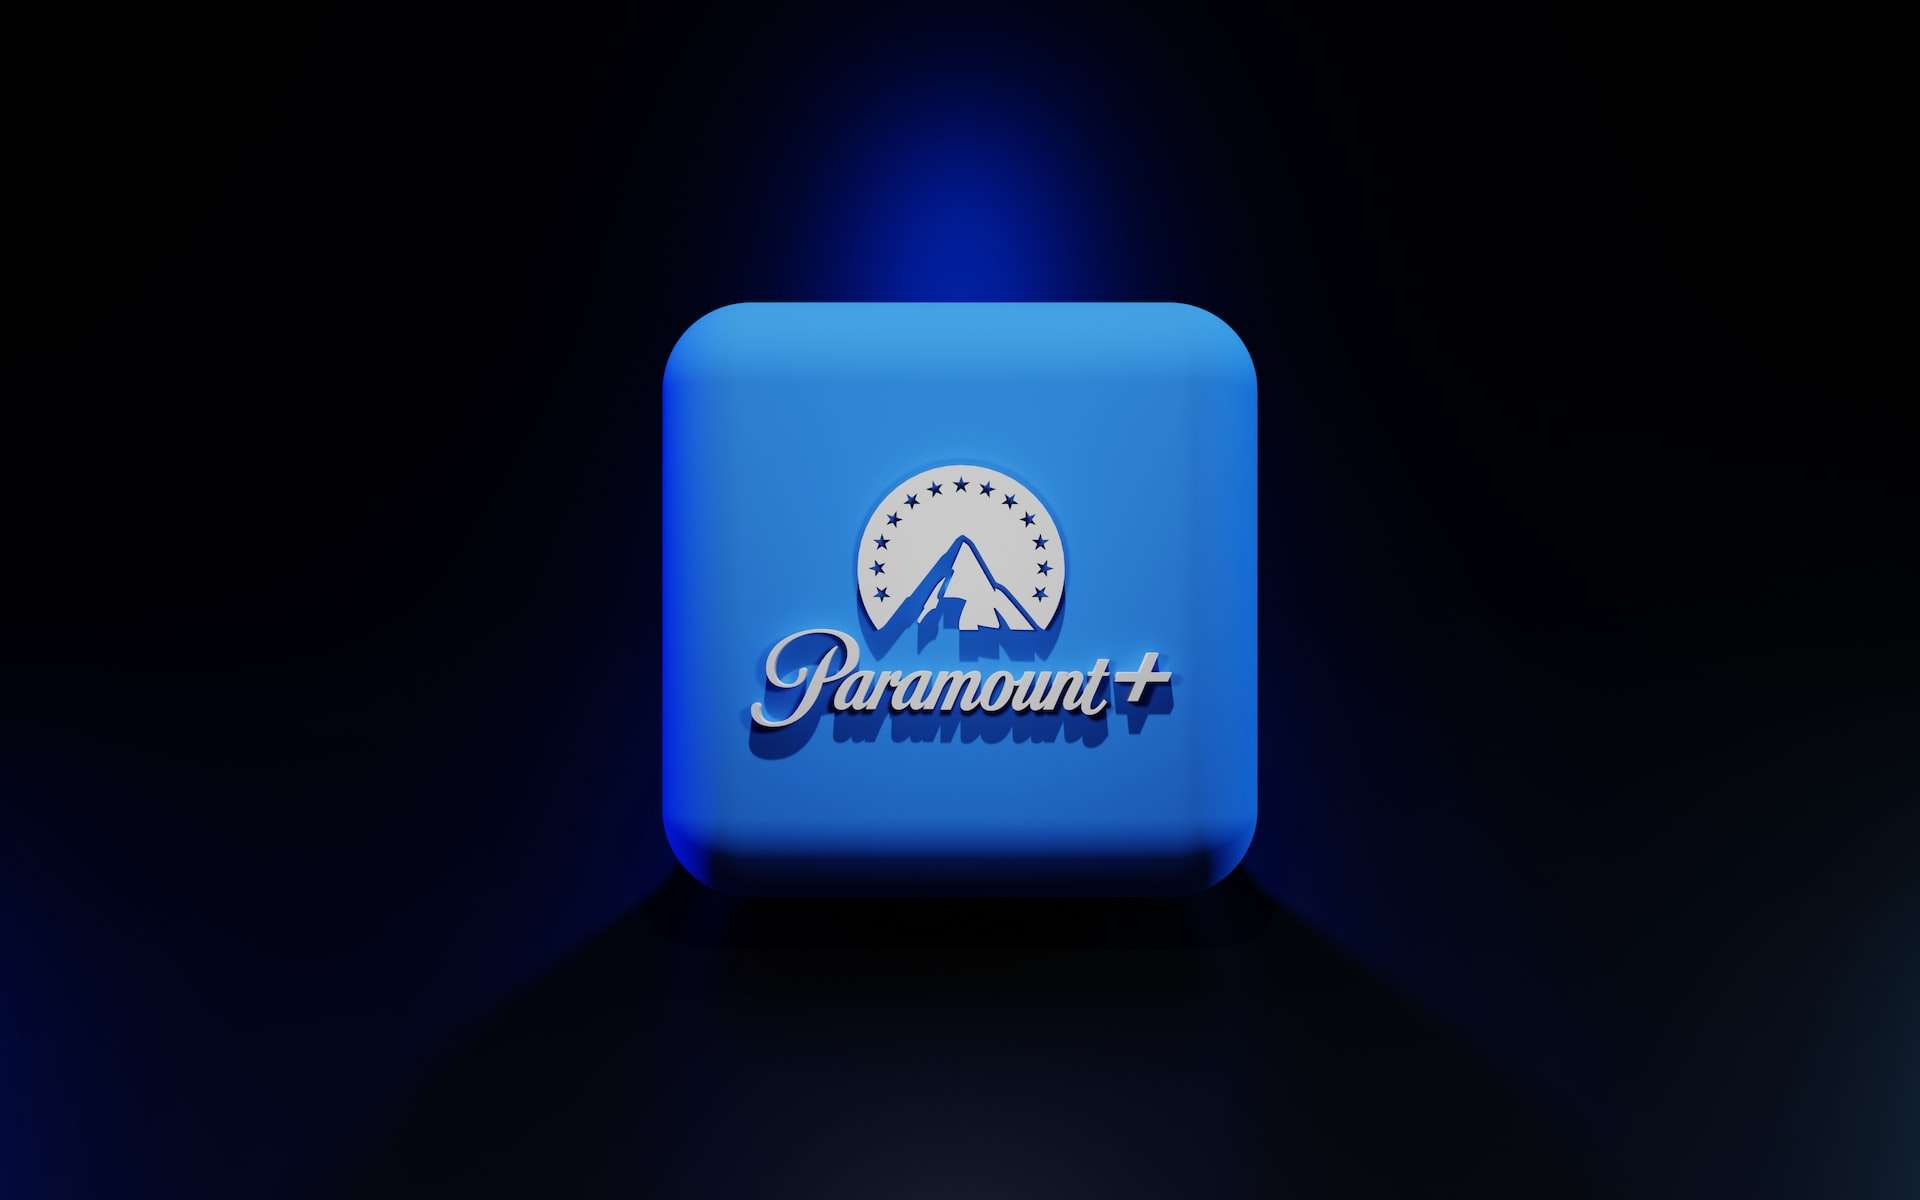 Pour Noël, Orange offre 6 mois d’abonnement Paramount+ gratuits avec sa Livebox Fibre